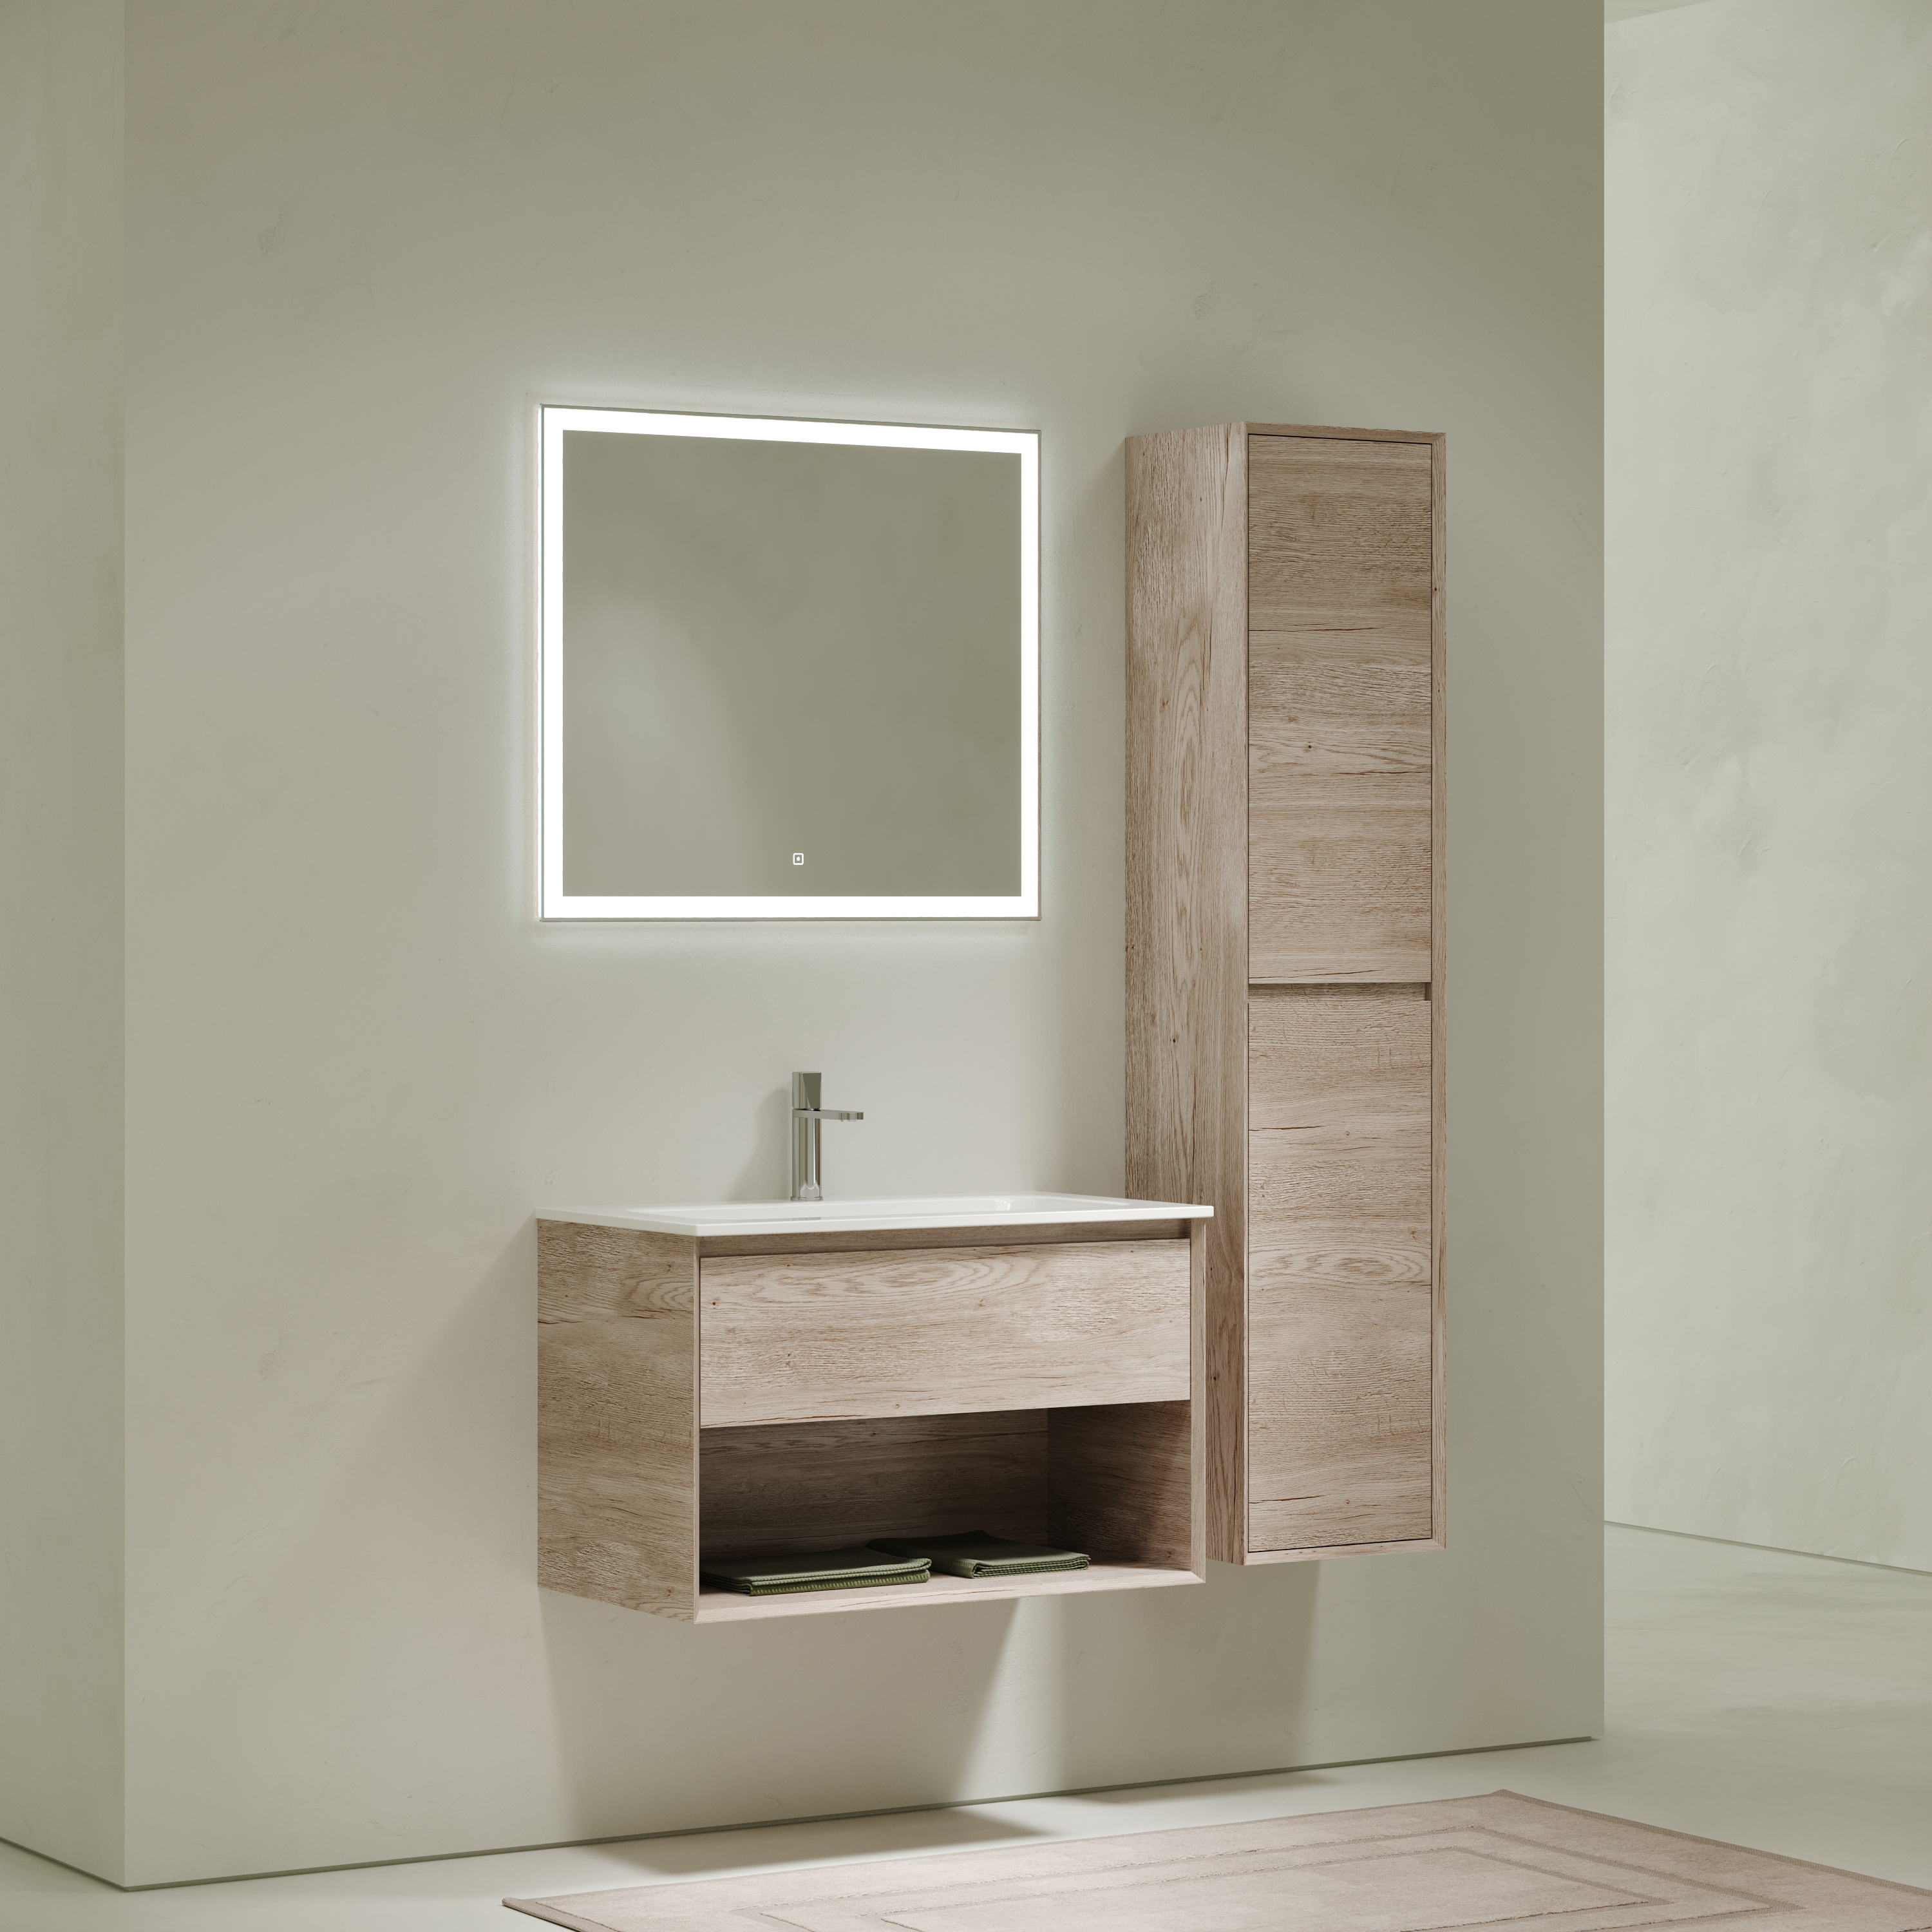 Мебель для ванной комнаты Sancos Marmi 1.0 80 см дуб галифакс натуральный, цвет коричневый MR1.080EG - фото 2